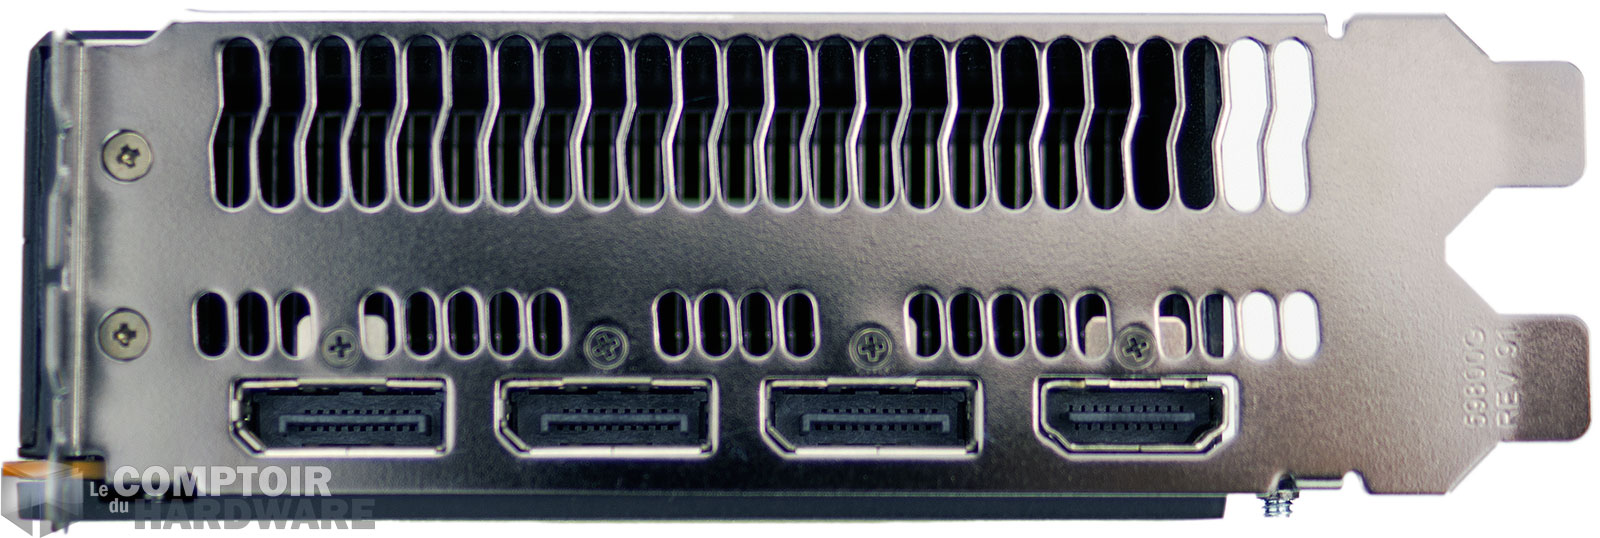 RADEON RX VEGA64 : connecteurs vidéo